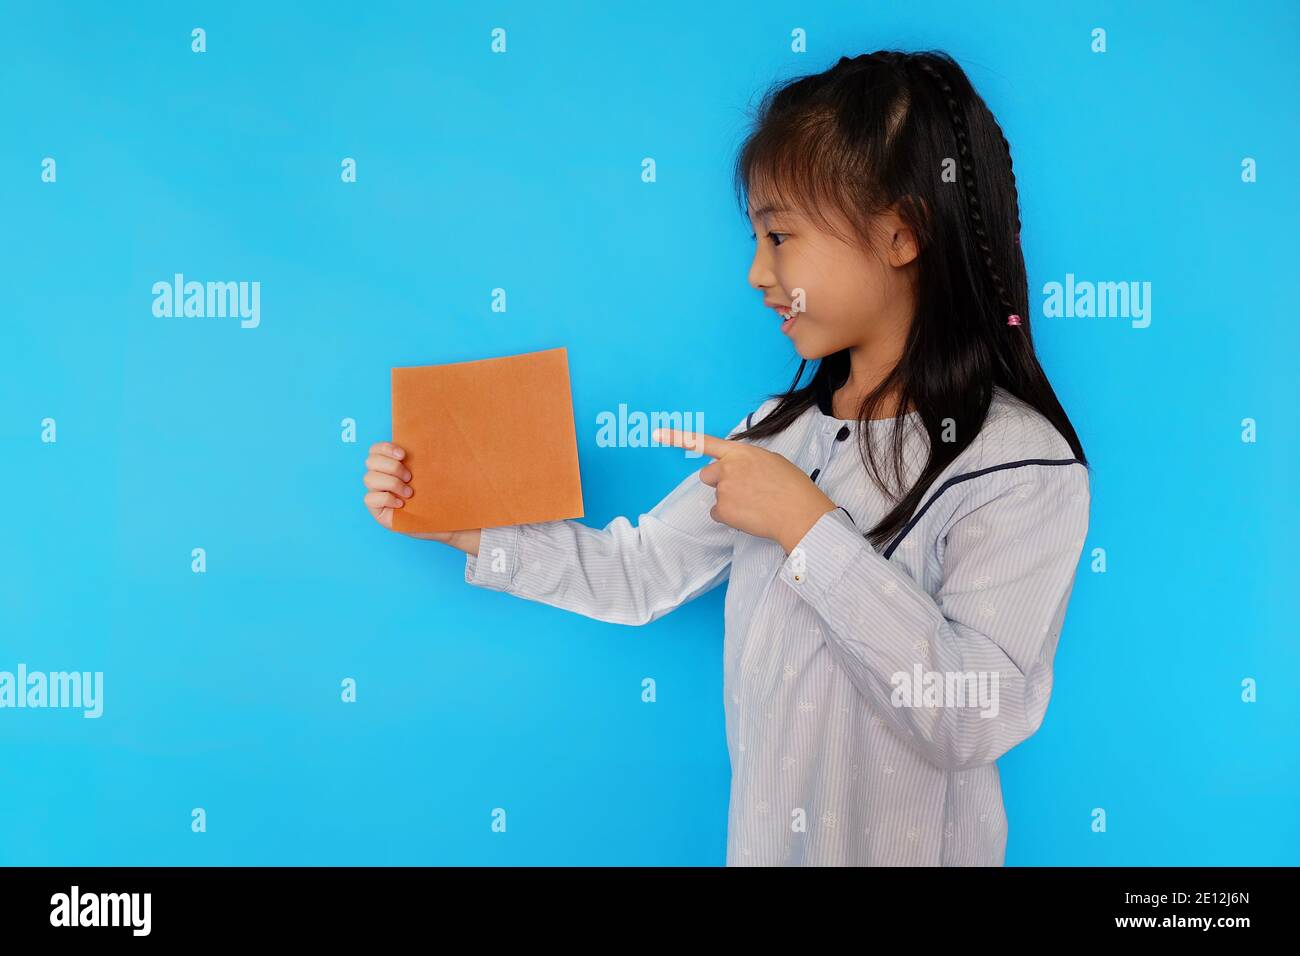 Une jeune fille asiatique mignonne debout sur un fond bleu clair Uni, tenant un morceau de papier vierge, souriant. Banque D'Images